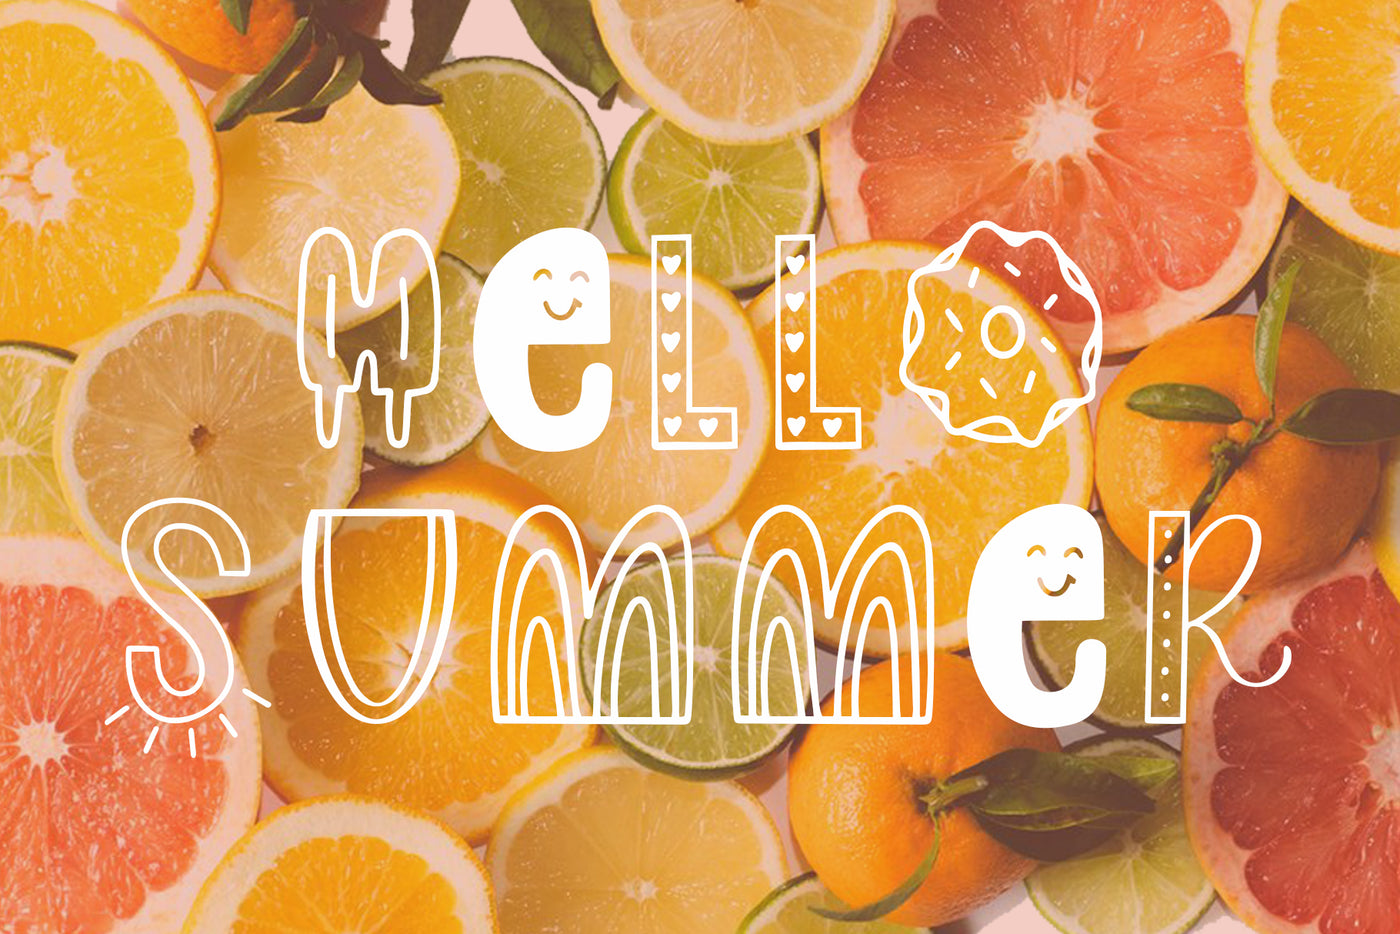 Slice of Summer Font